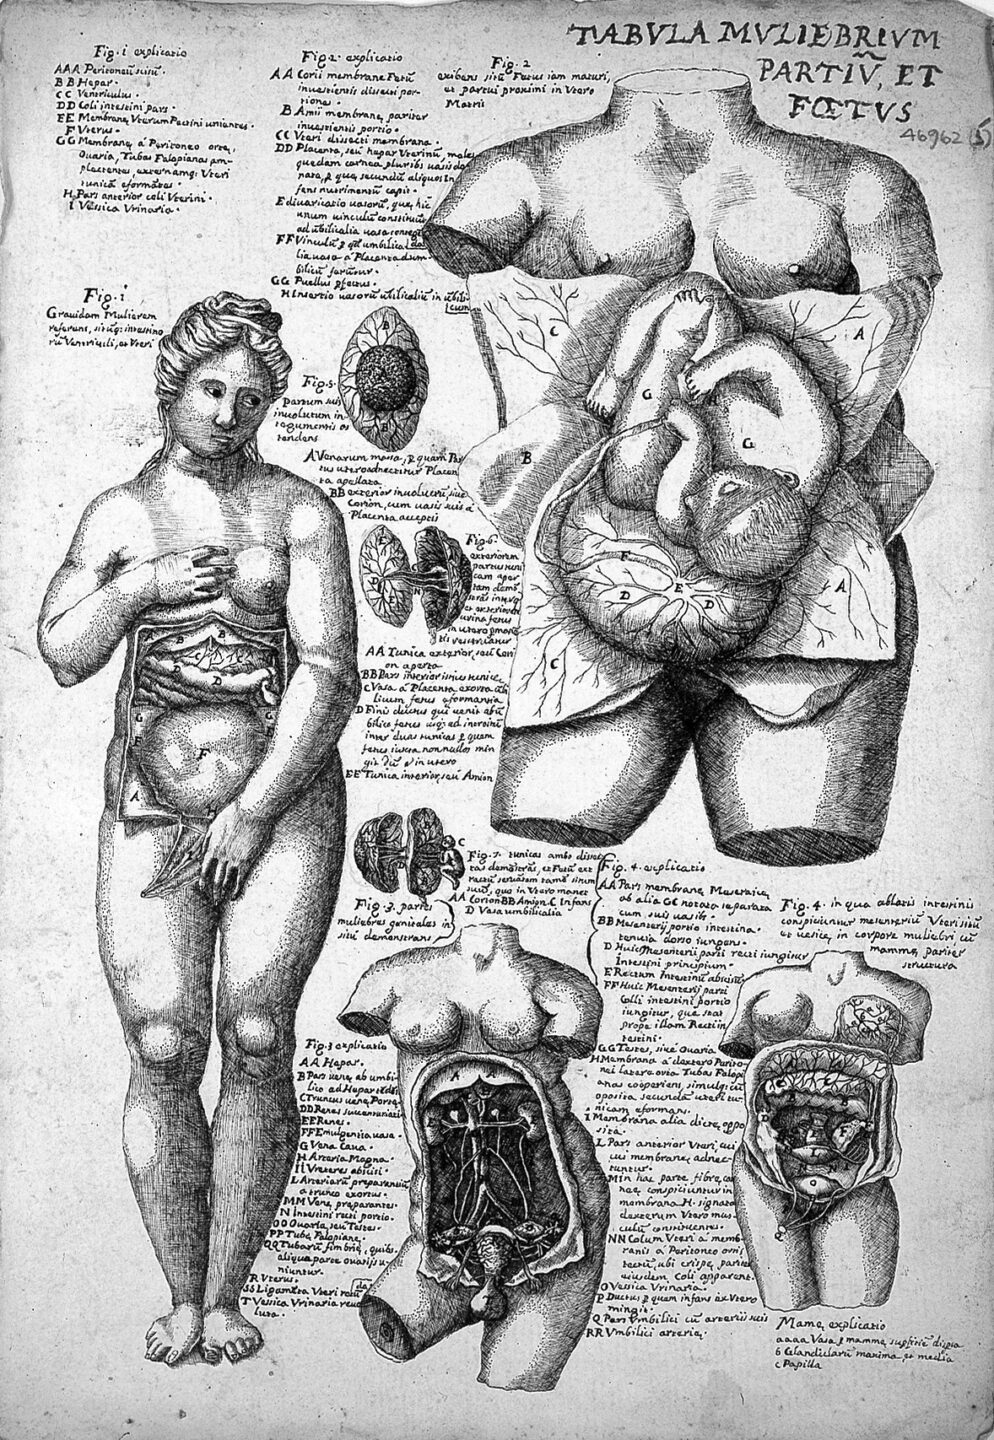 Anatomische Darstellung einer Frau aus dem frühen 17. Jh. nach Valverde. Die Genitalien sind irrelevant.